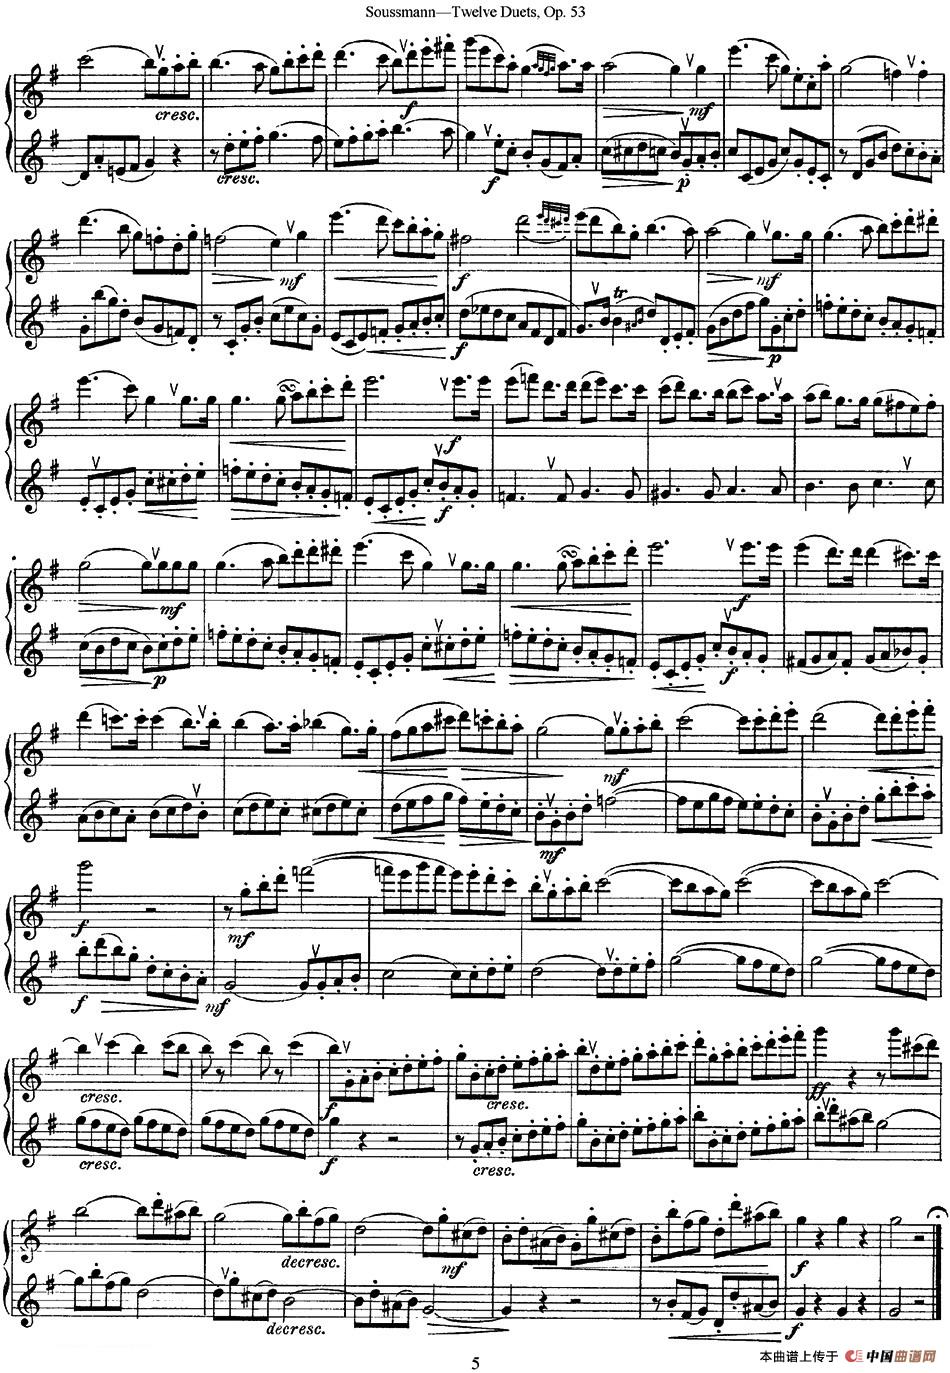 苏斯曼12首长笛重奏曲Op.53（NO.1-NO.4）